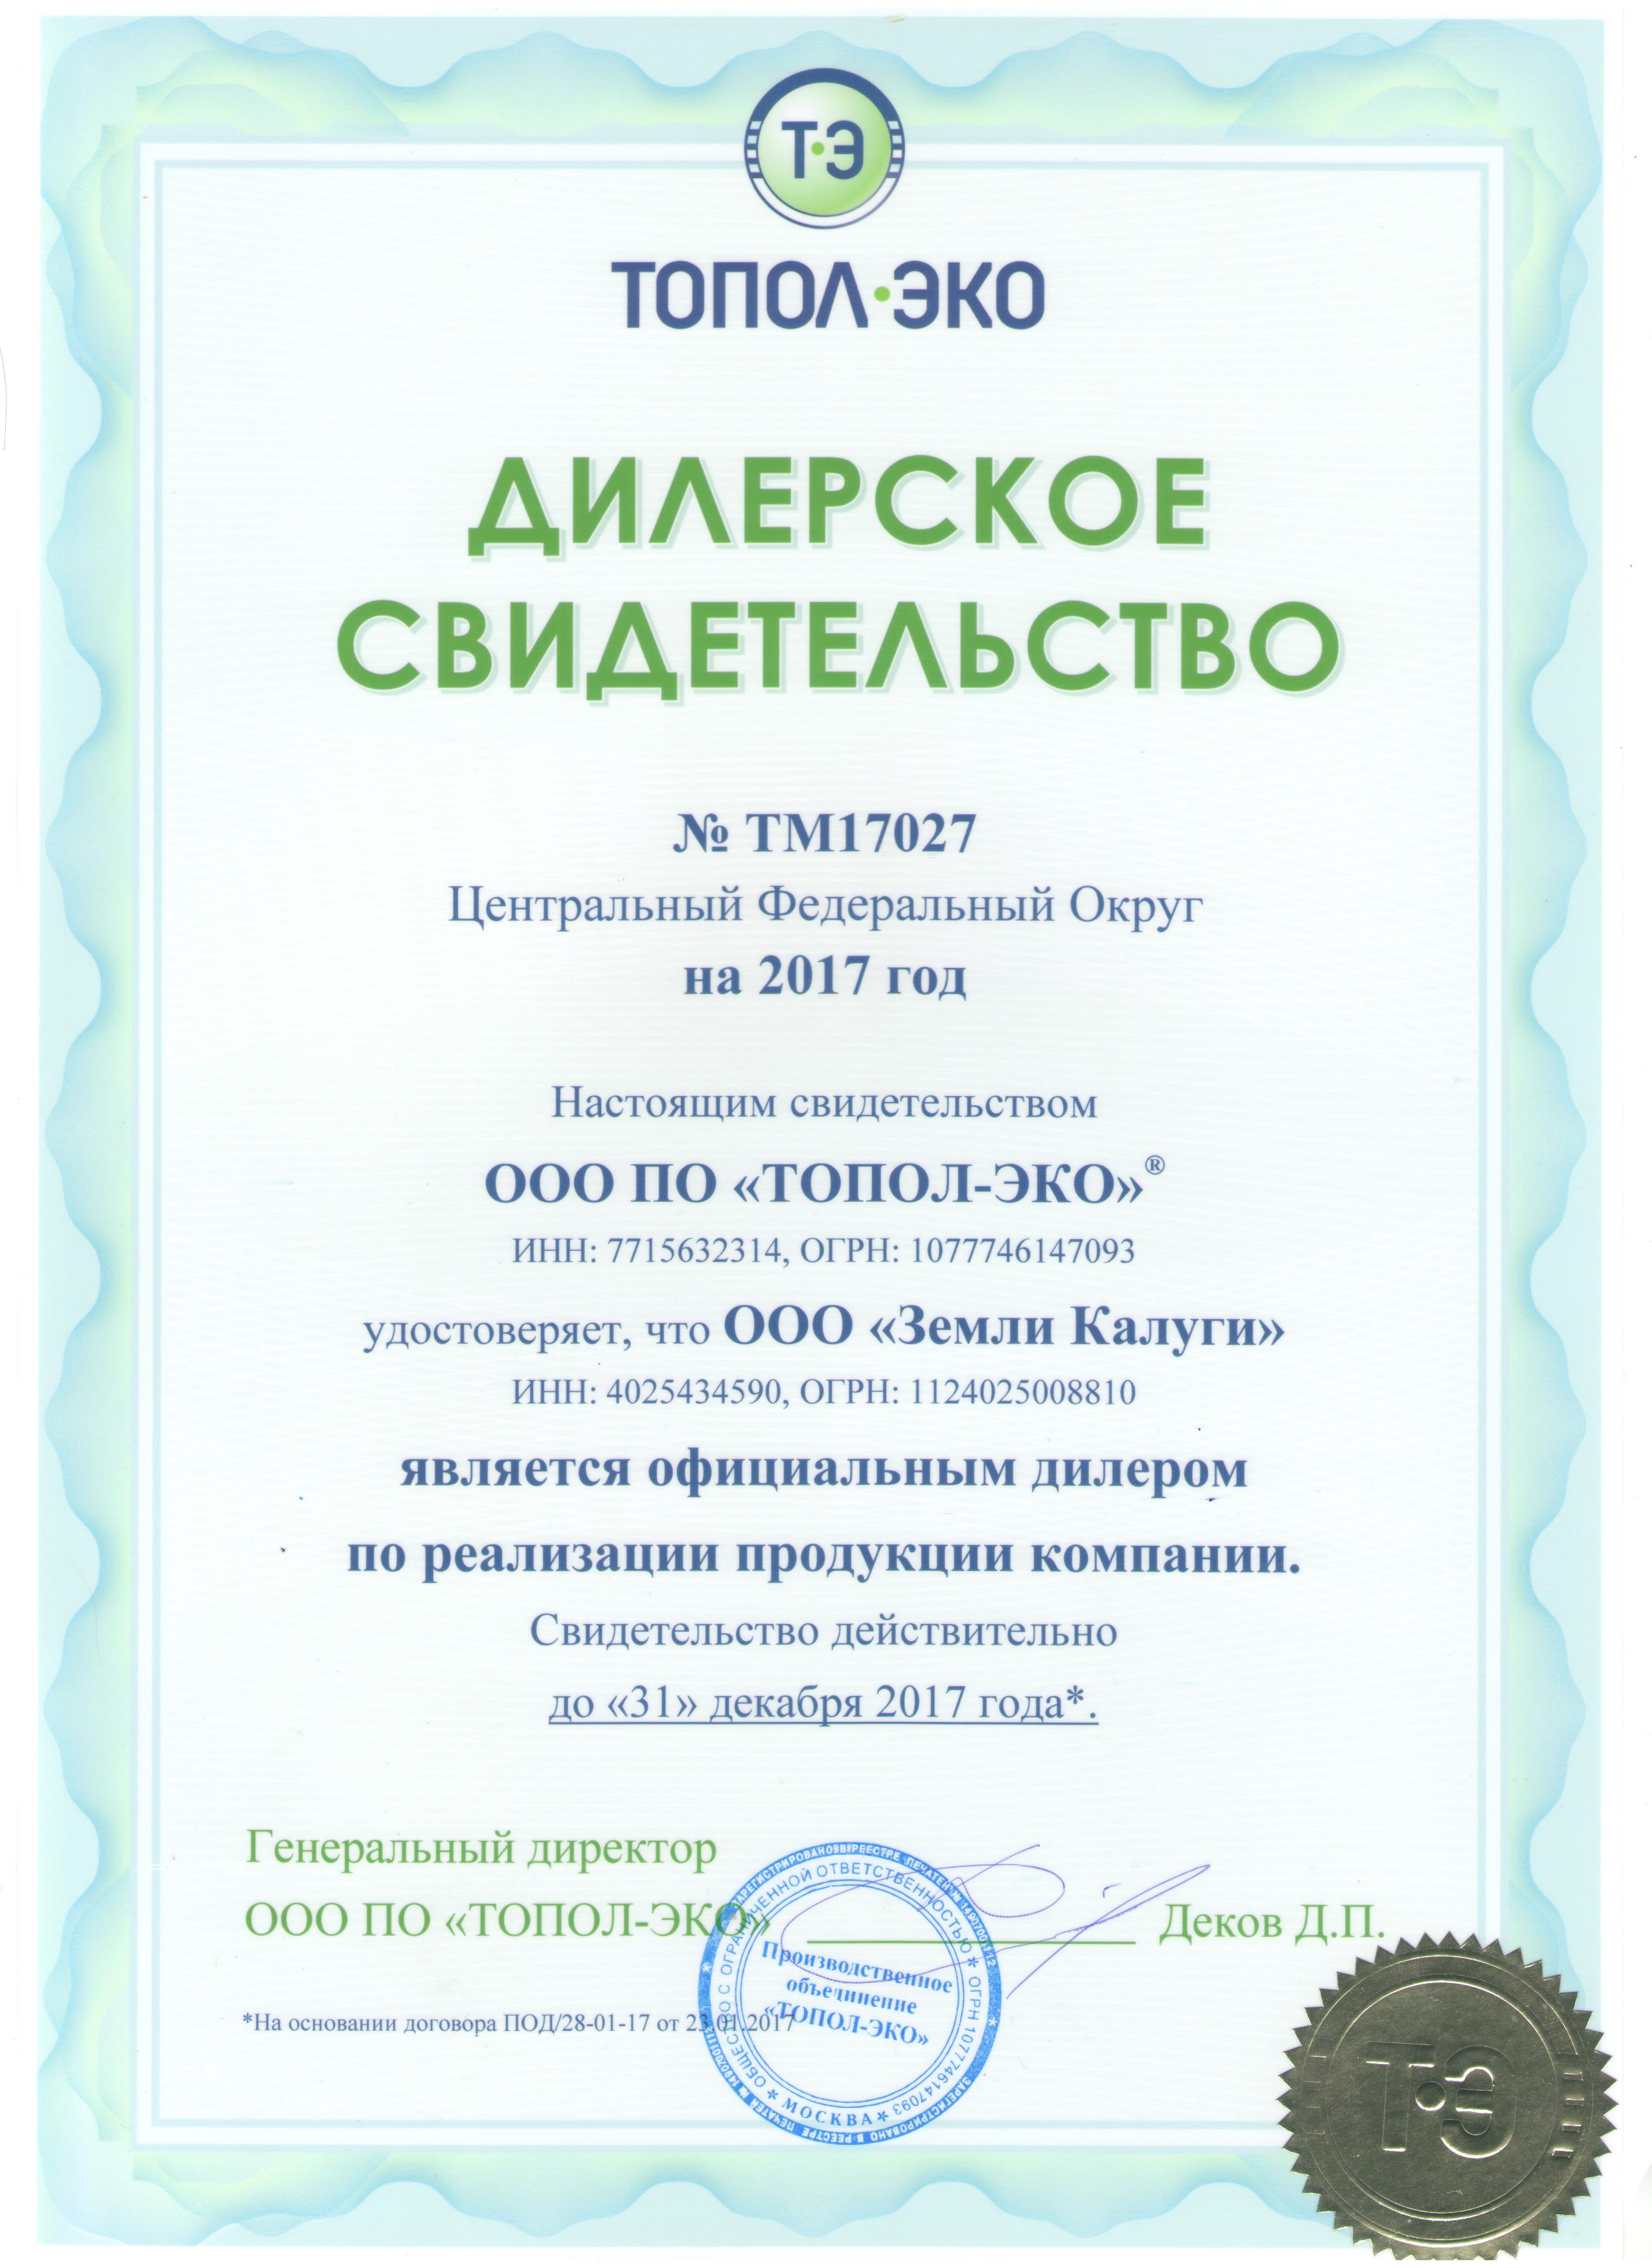 Свидетельство официального дилера от производителя компании ПО "ТОПОЛ-ЭКО" за 2017 год.